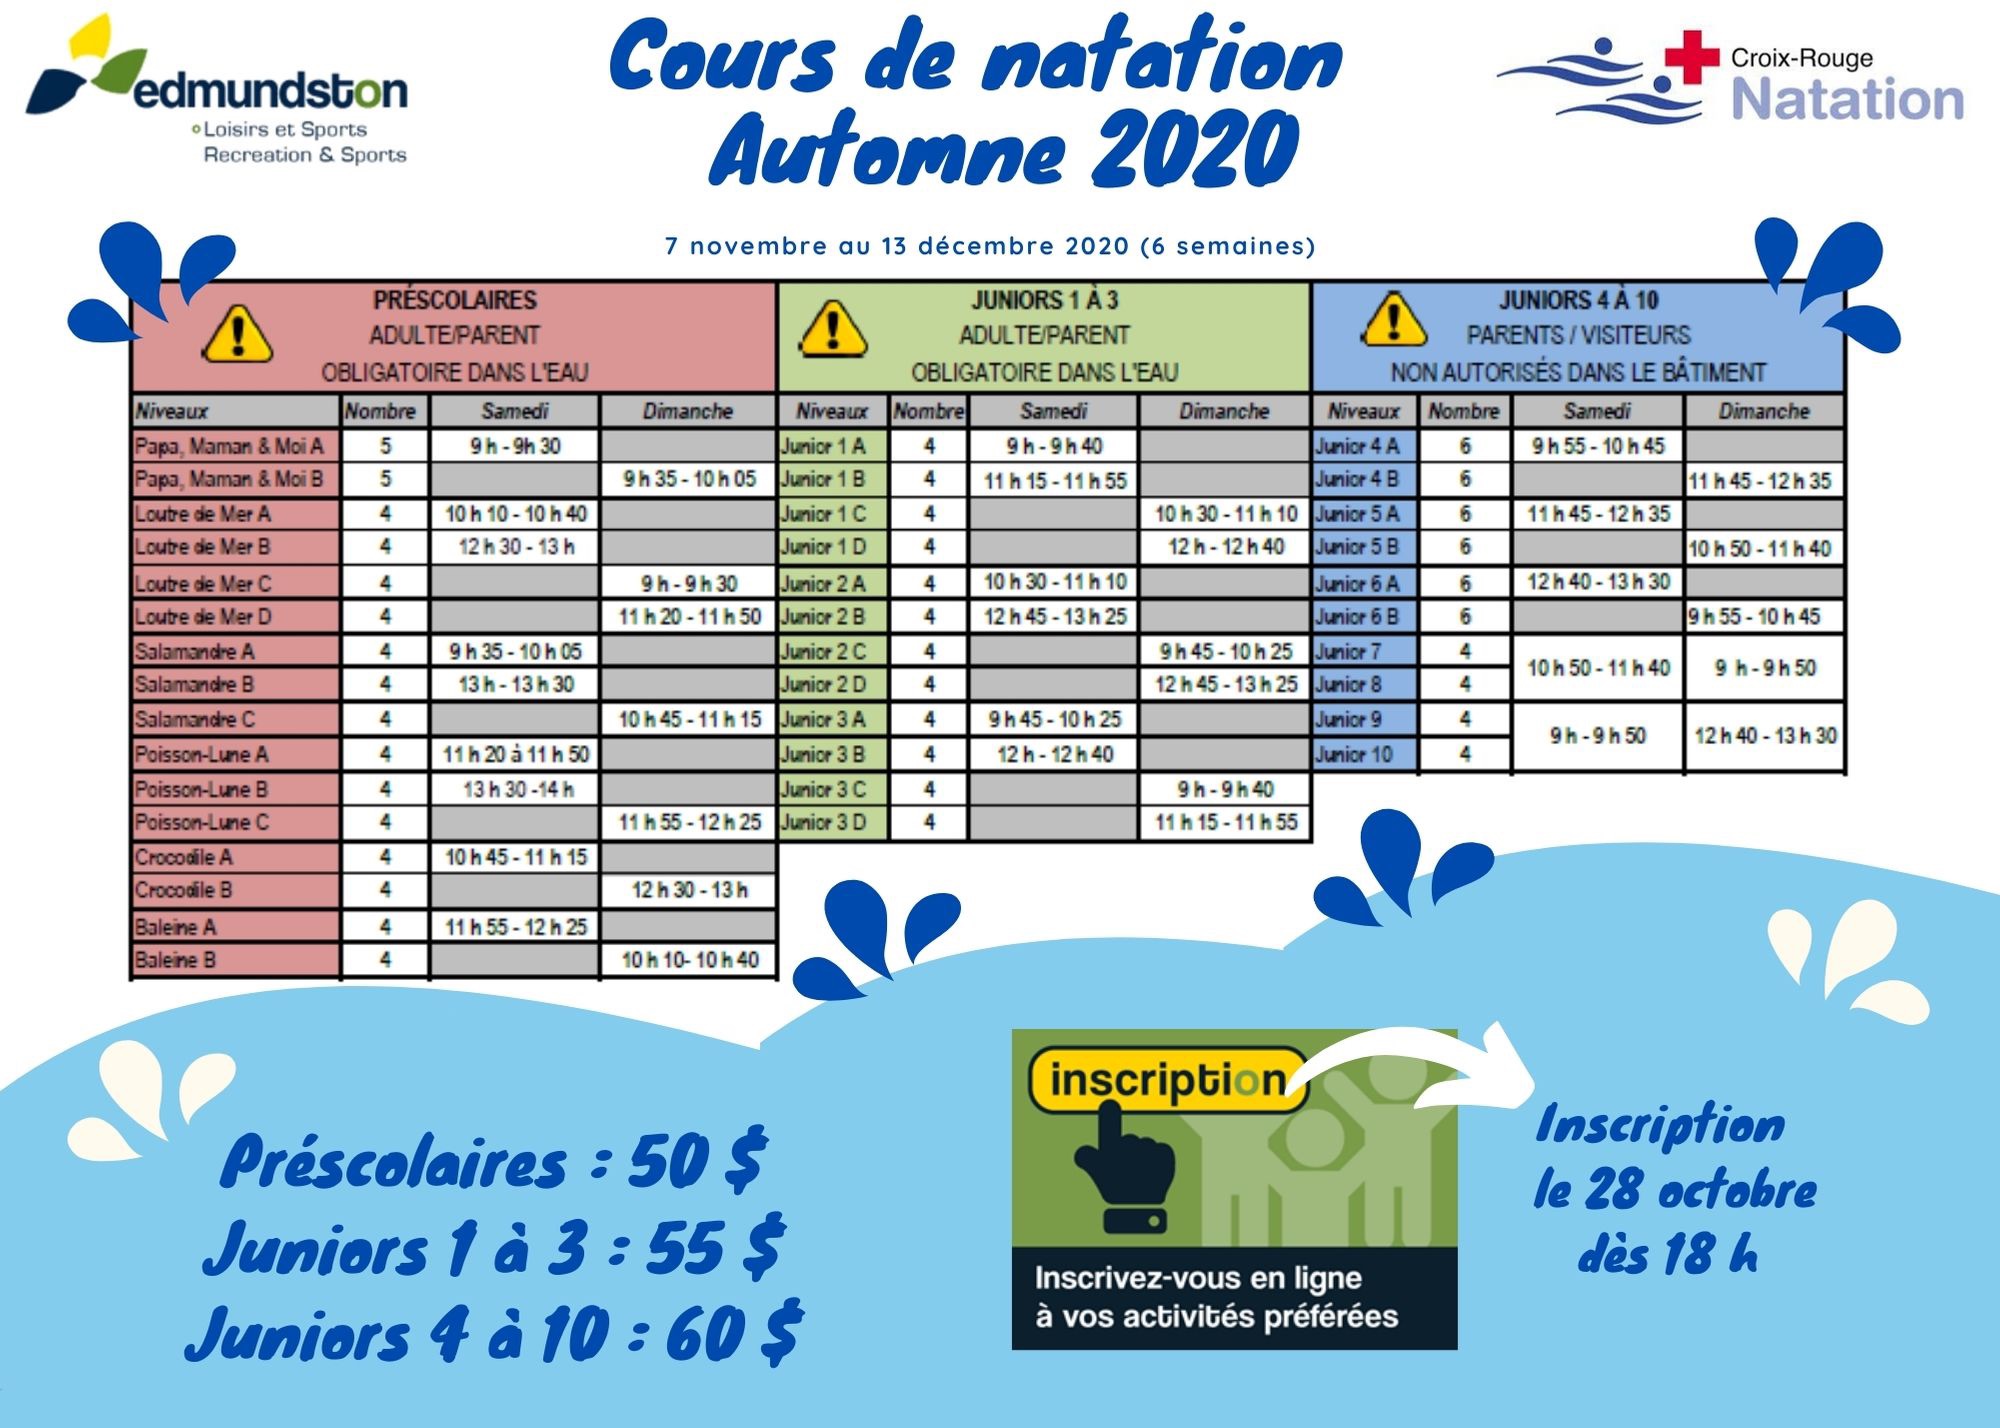 Activites_cours-natation-horaire-automne-2020.jpg